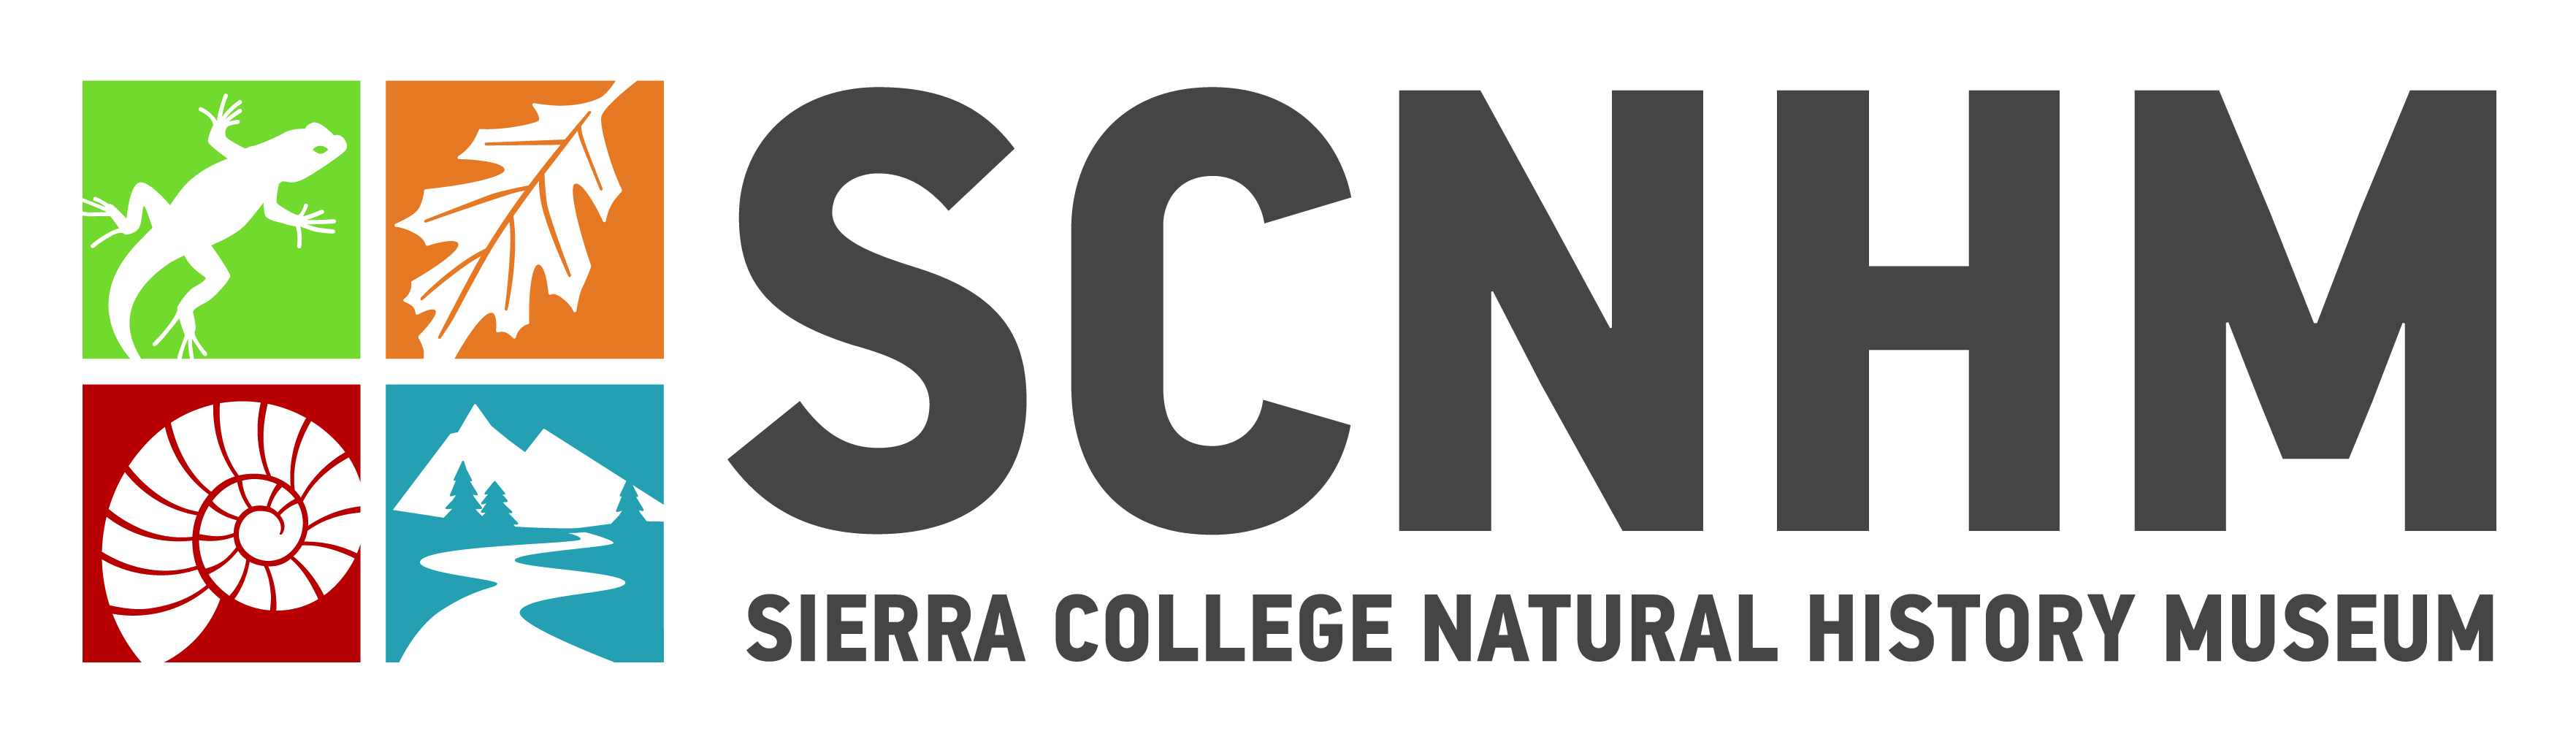 Sierra College Nature Center